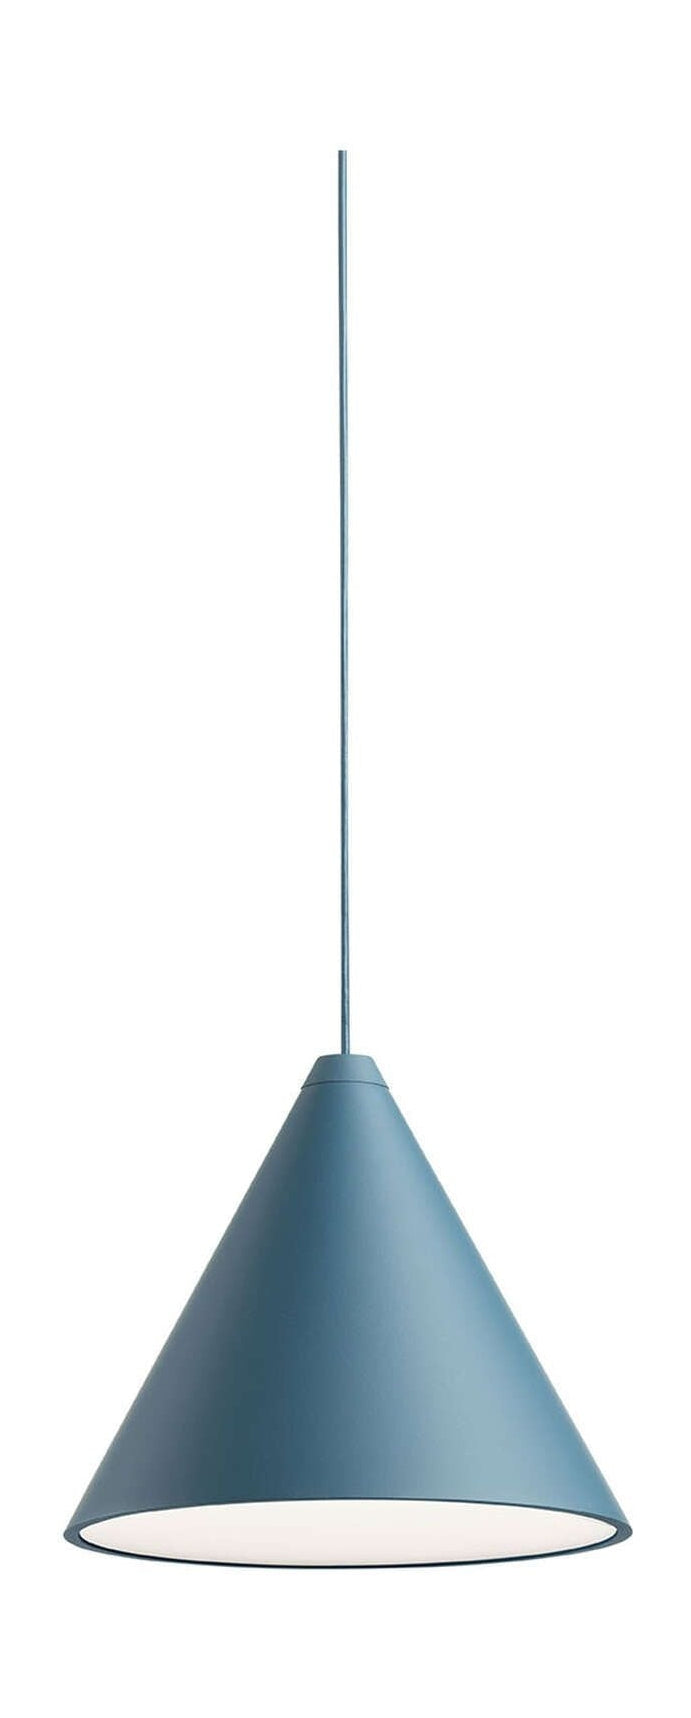 Lampa wisiorka na głowicę stożka FLOS Bluetooth 22 m, niebieski